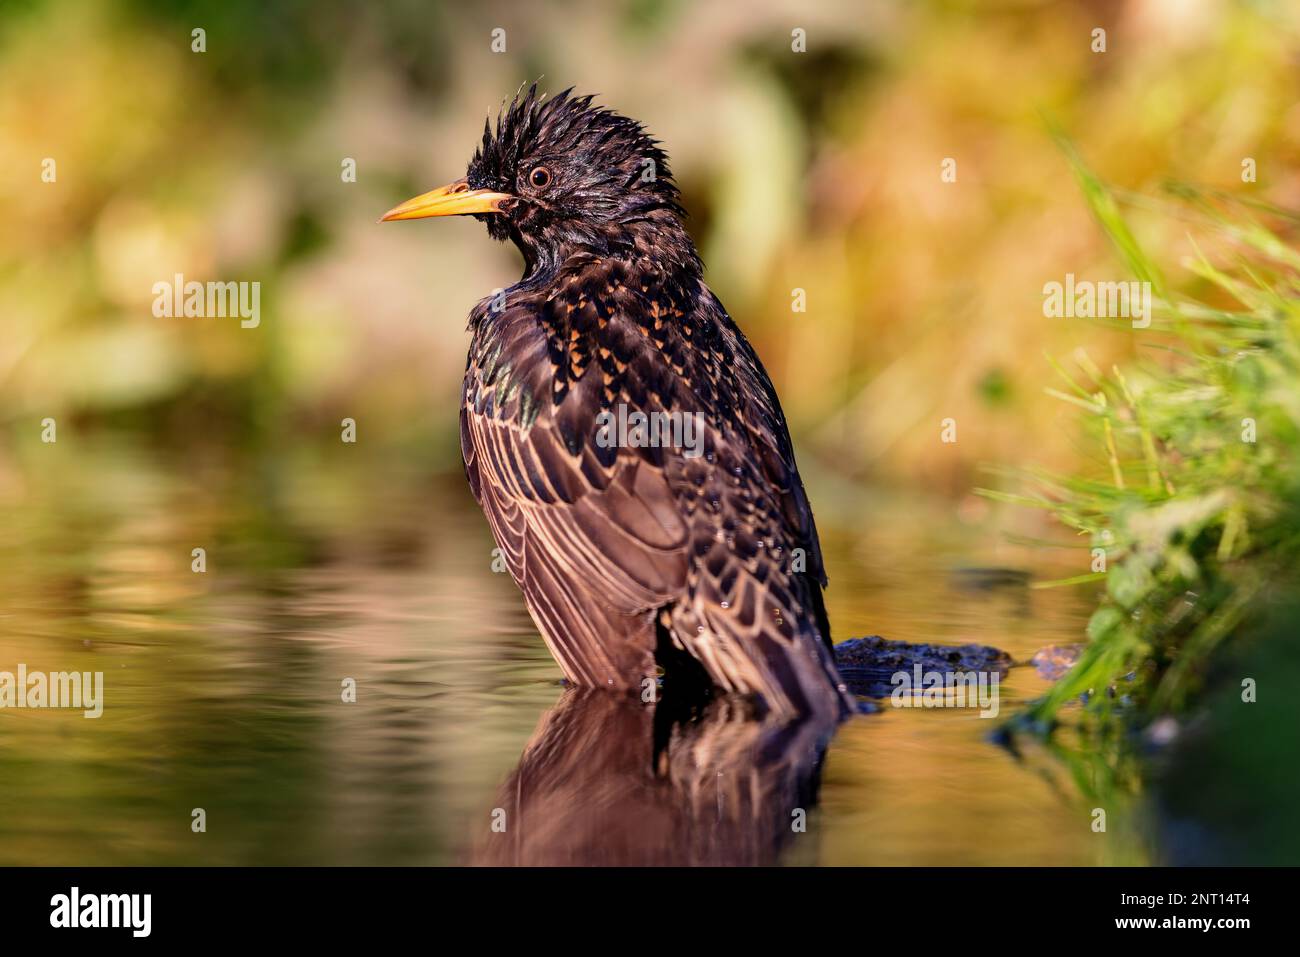 Esturling européen (Sturnus vulgaris) prenant un bain dans un étang au printemps. Banque D'Images